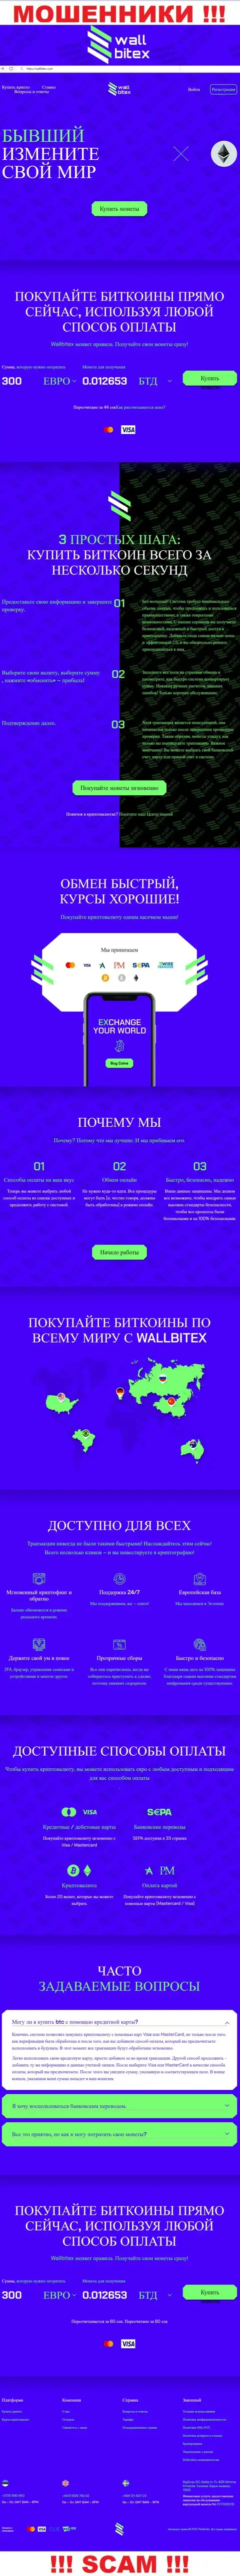 WallBitex Com - это официальный сайт противозаконно действующей конторы WallBitex